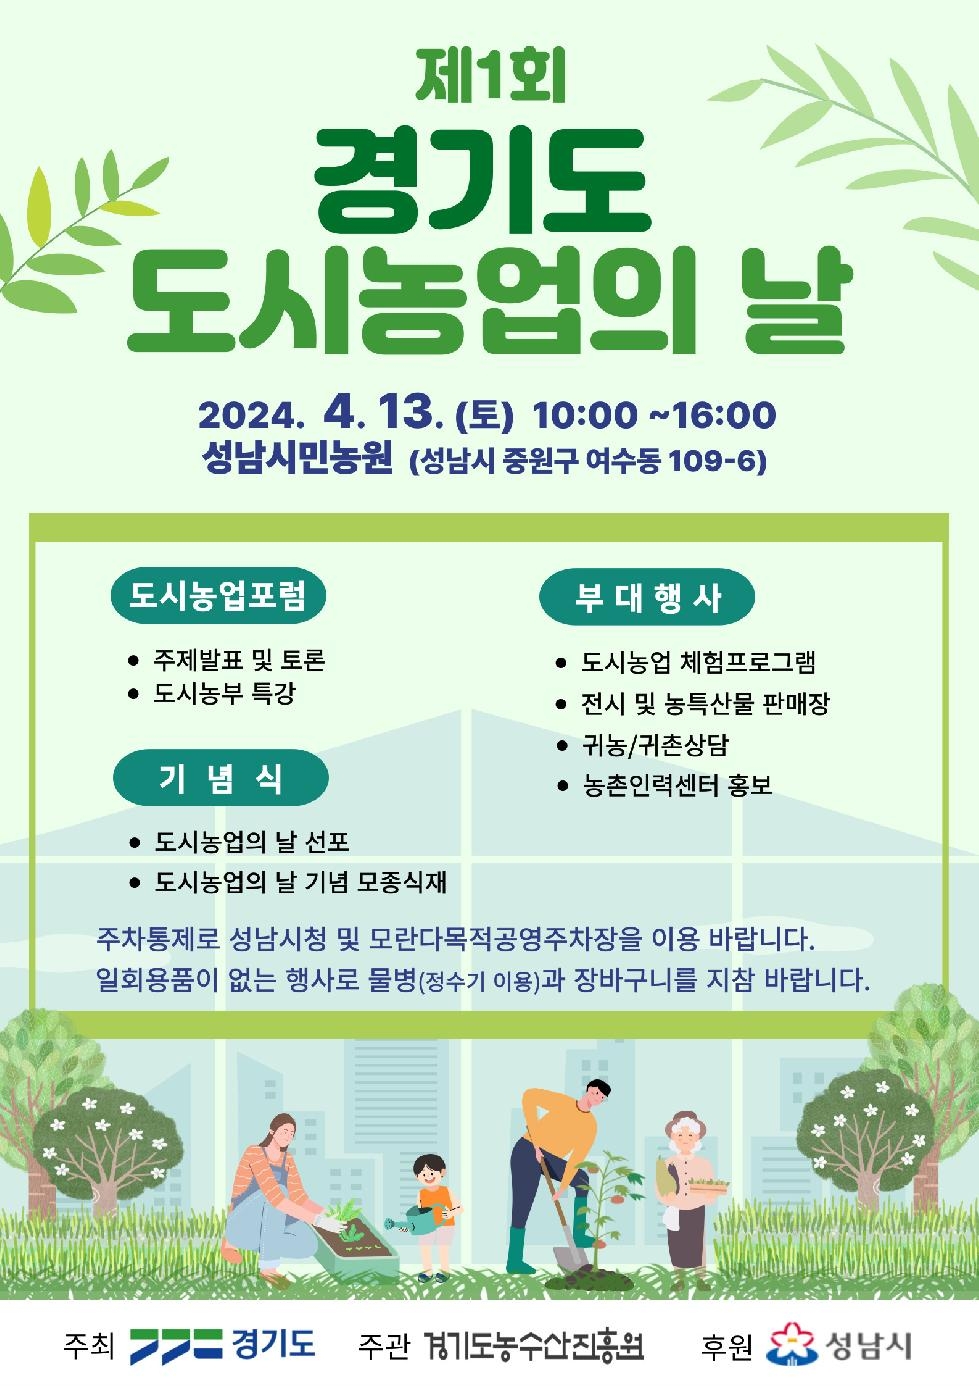 경기도,제1회 경기도 도시농업의 날 기념 행사 개최